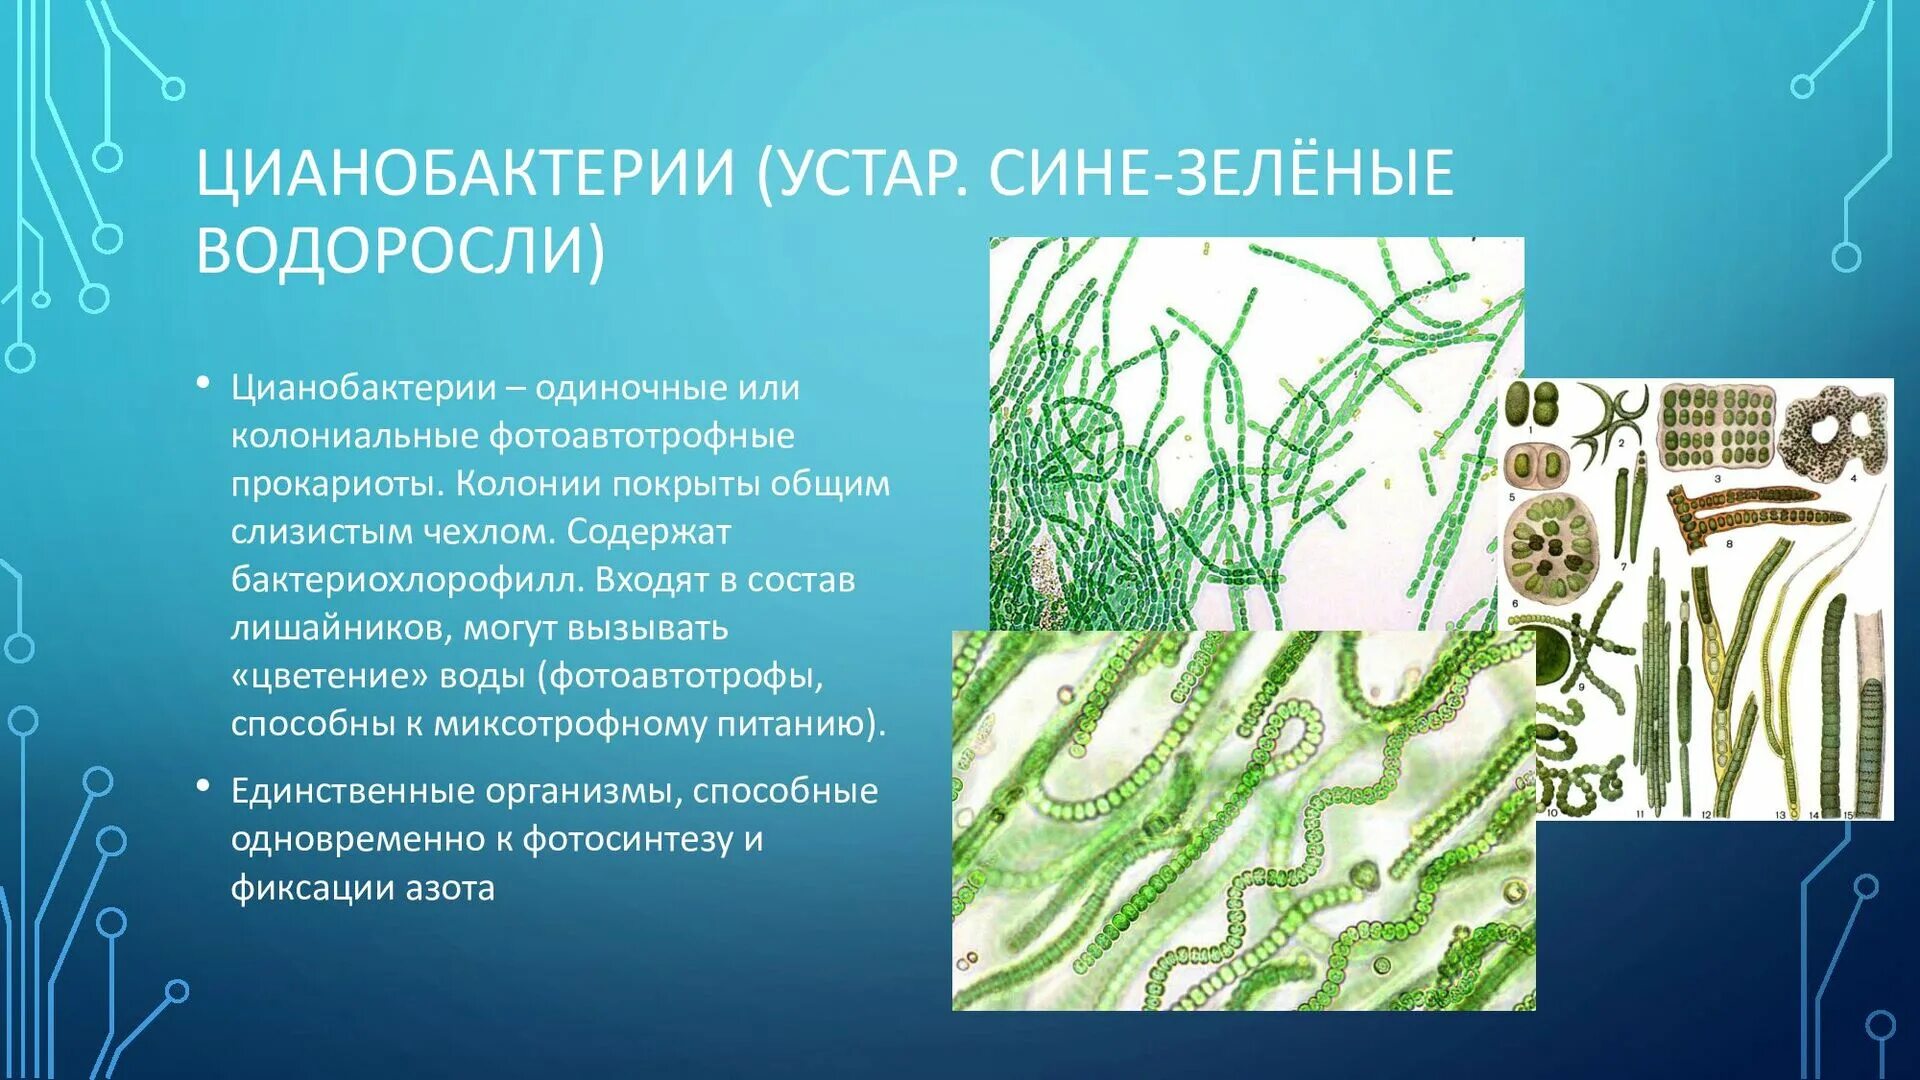 Цианобактерии встречаются в составе лишайников. Цианобактерии сине-зеленые водоросли. Хамесифоновые цианобактерии. Фотосинтезирующие цианобактерии. Цианобактерии в лишайниках.